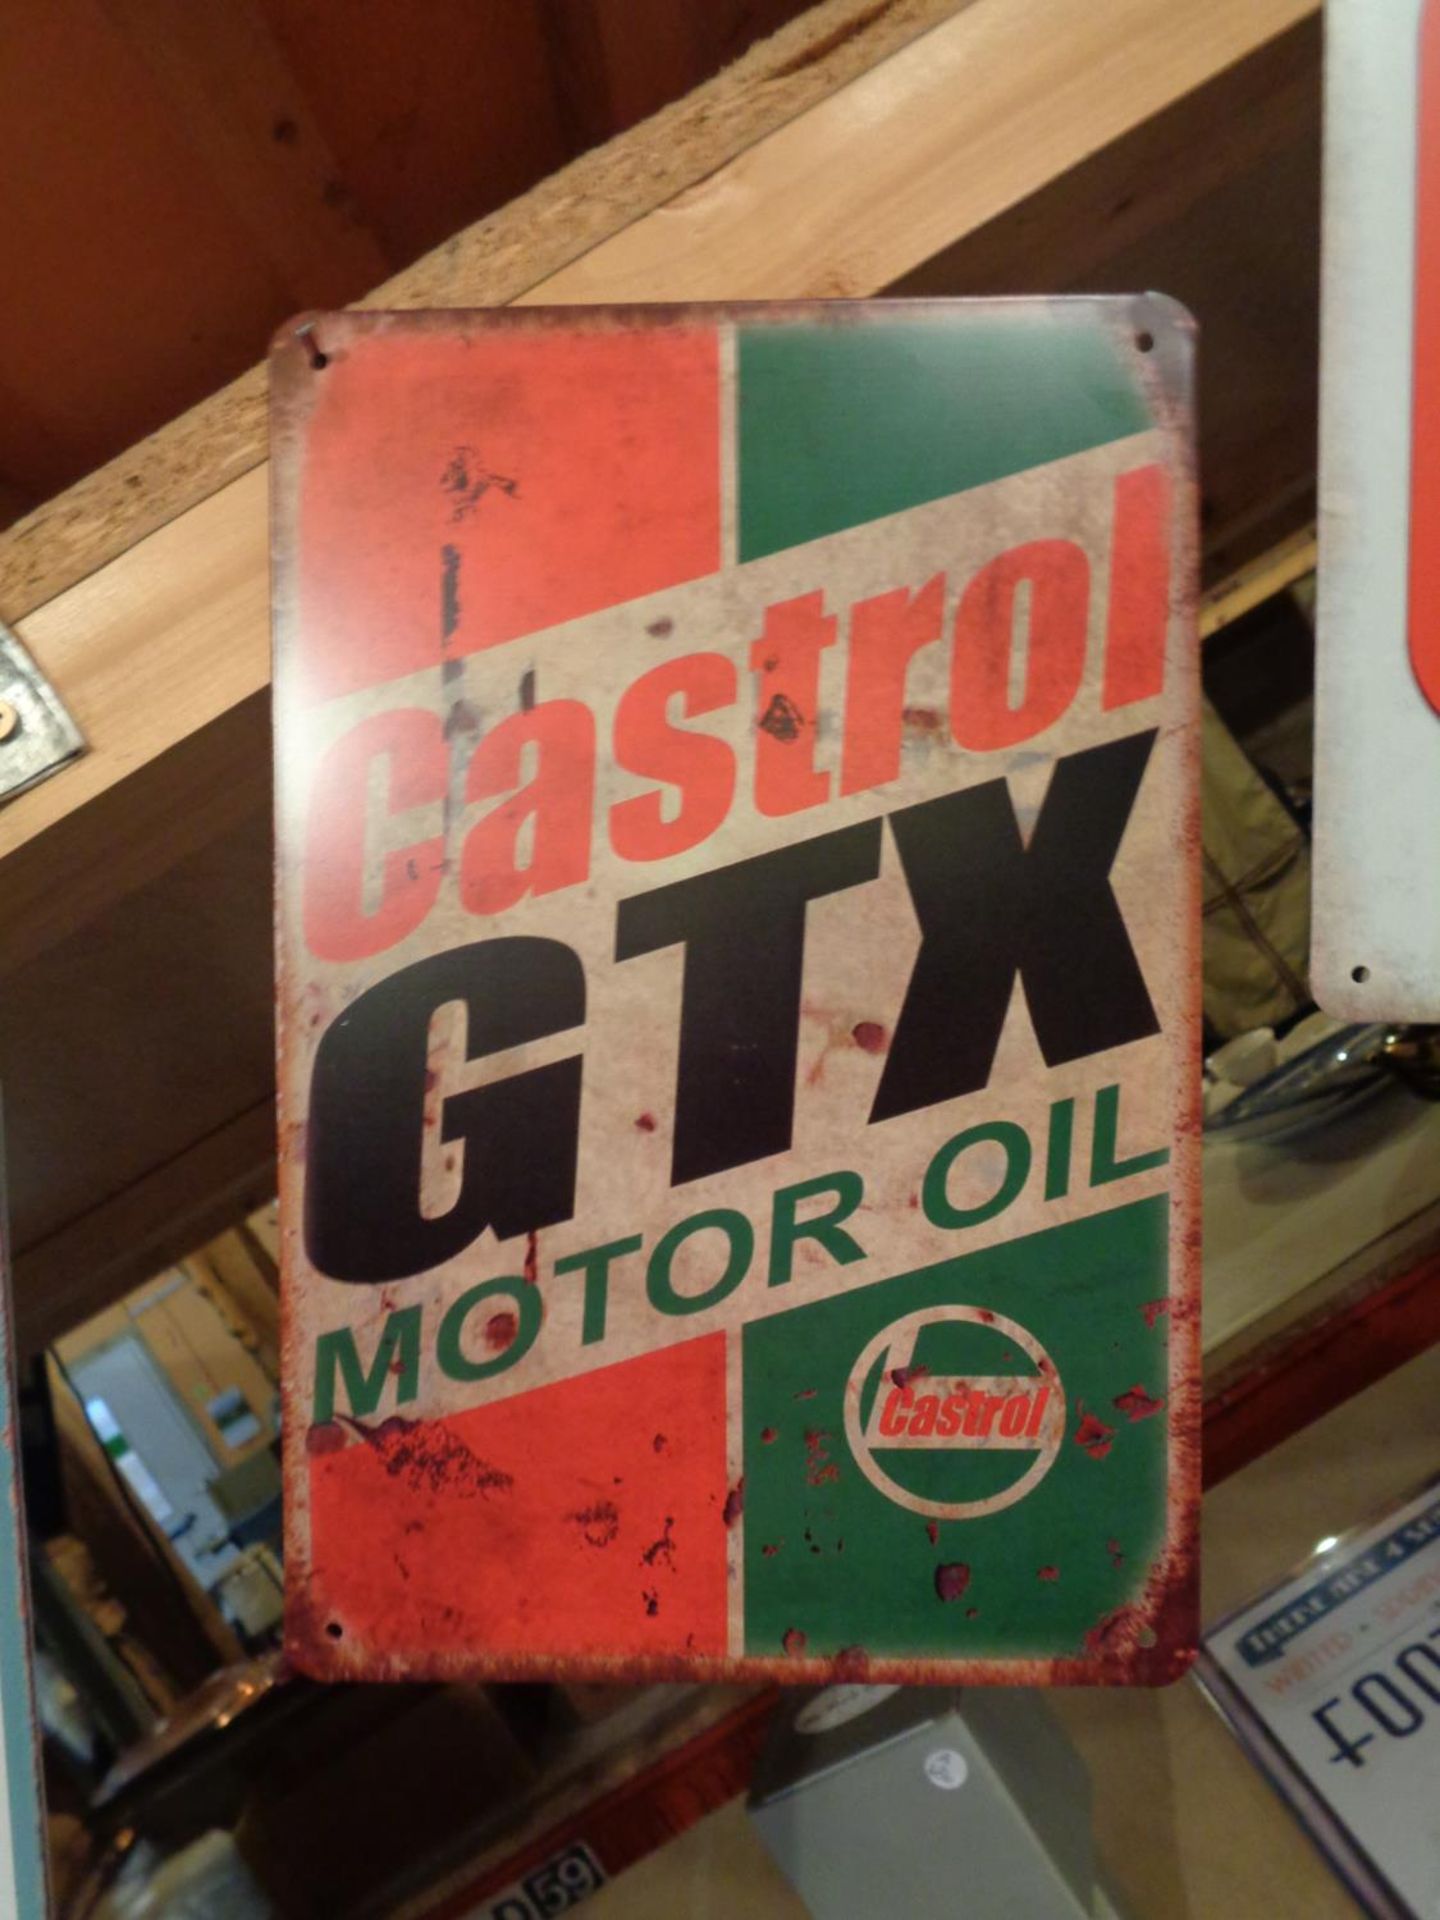 A TIN 'CASTROL GTX MOTOR OIL' SIGN